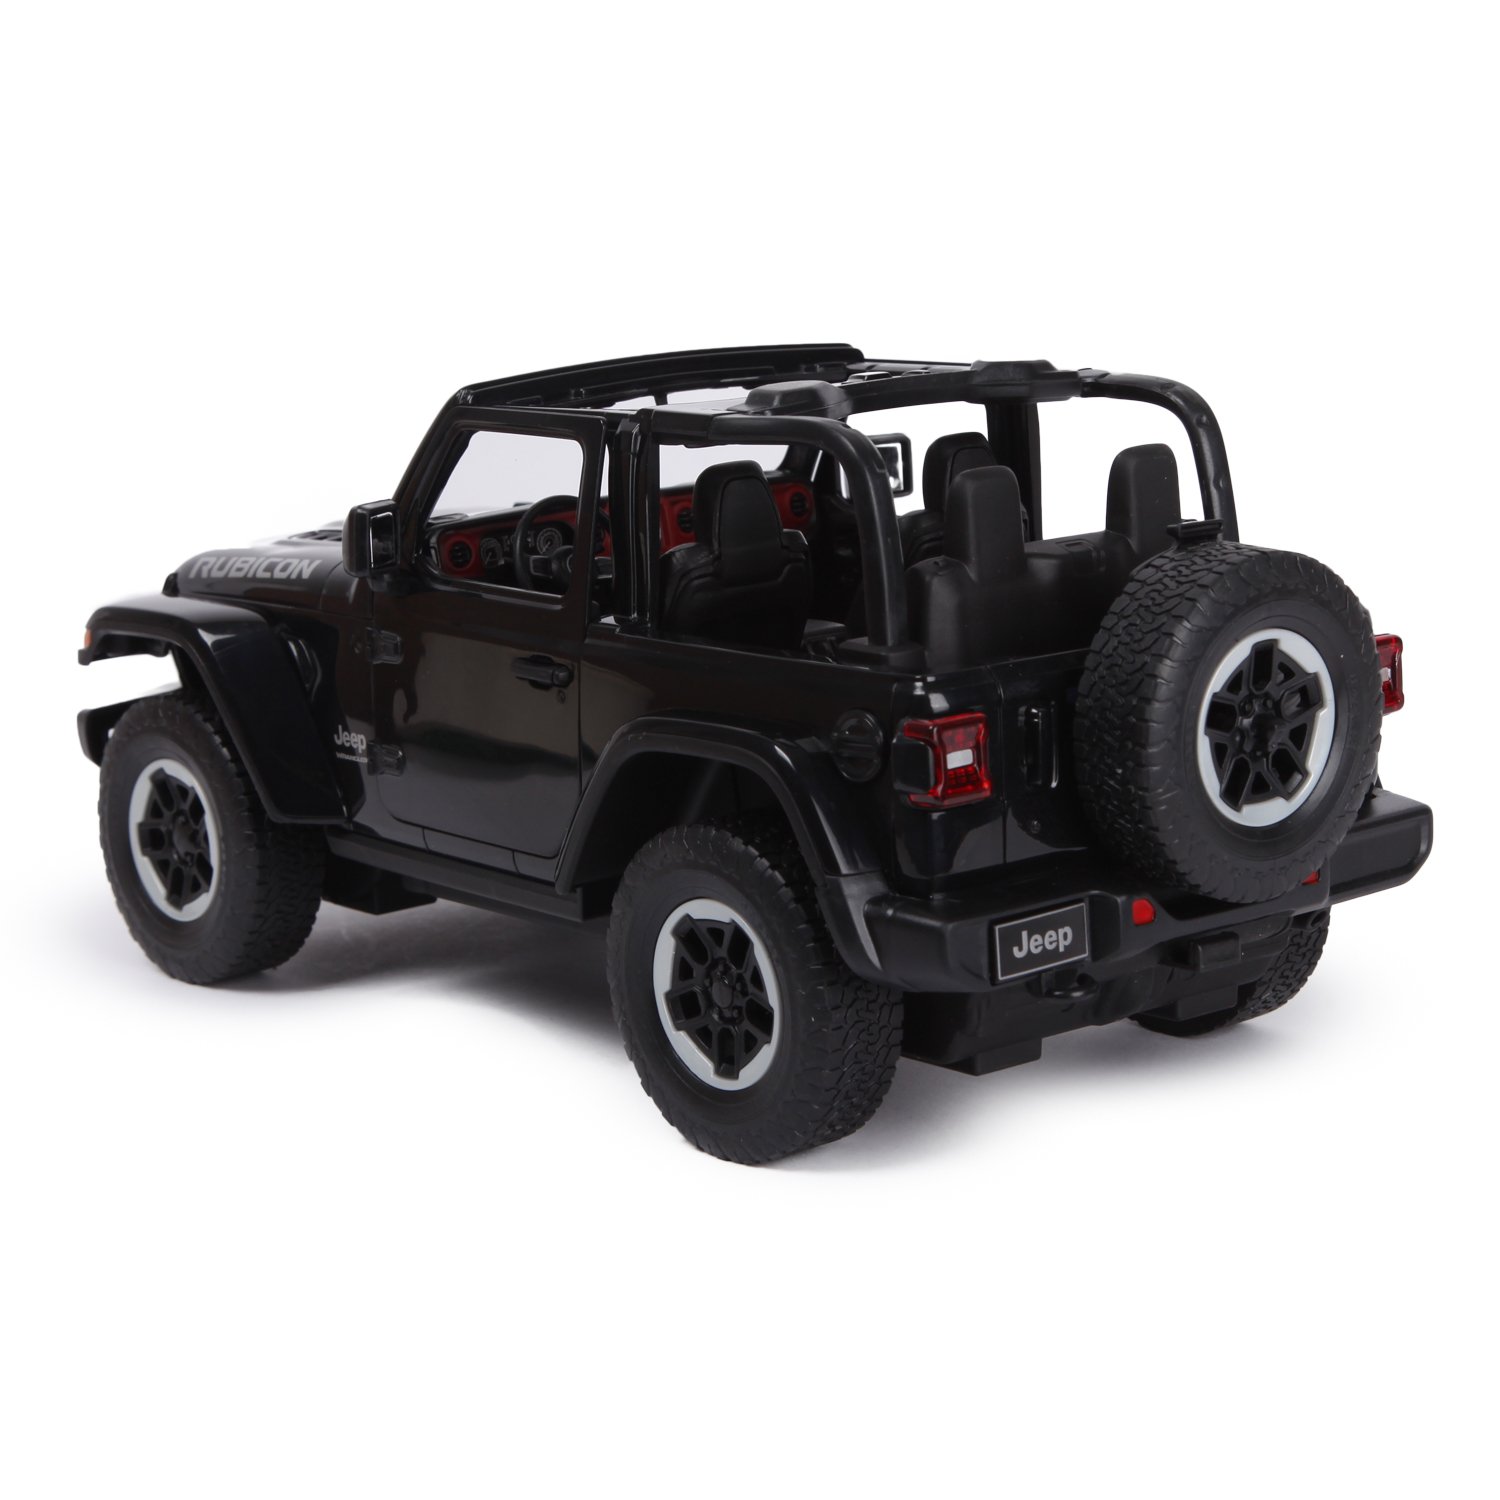 Машина Rastar РУ 1:14 Jeep Wrangler JL Черная 79400